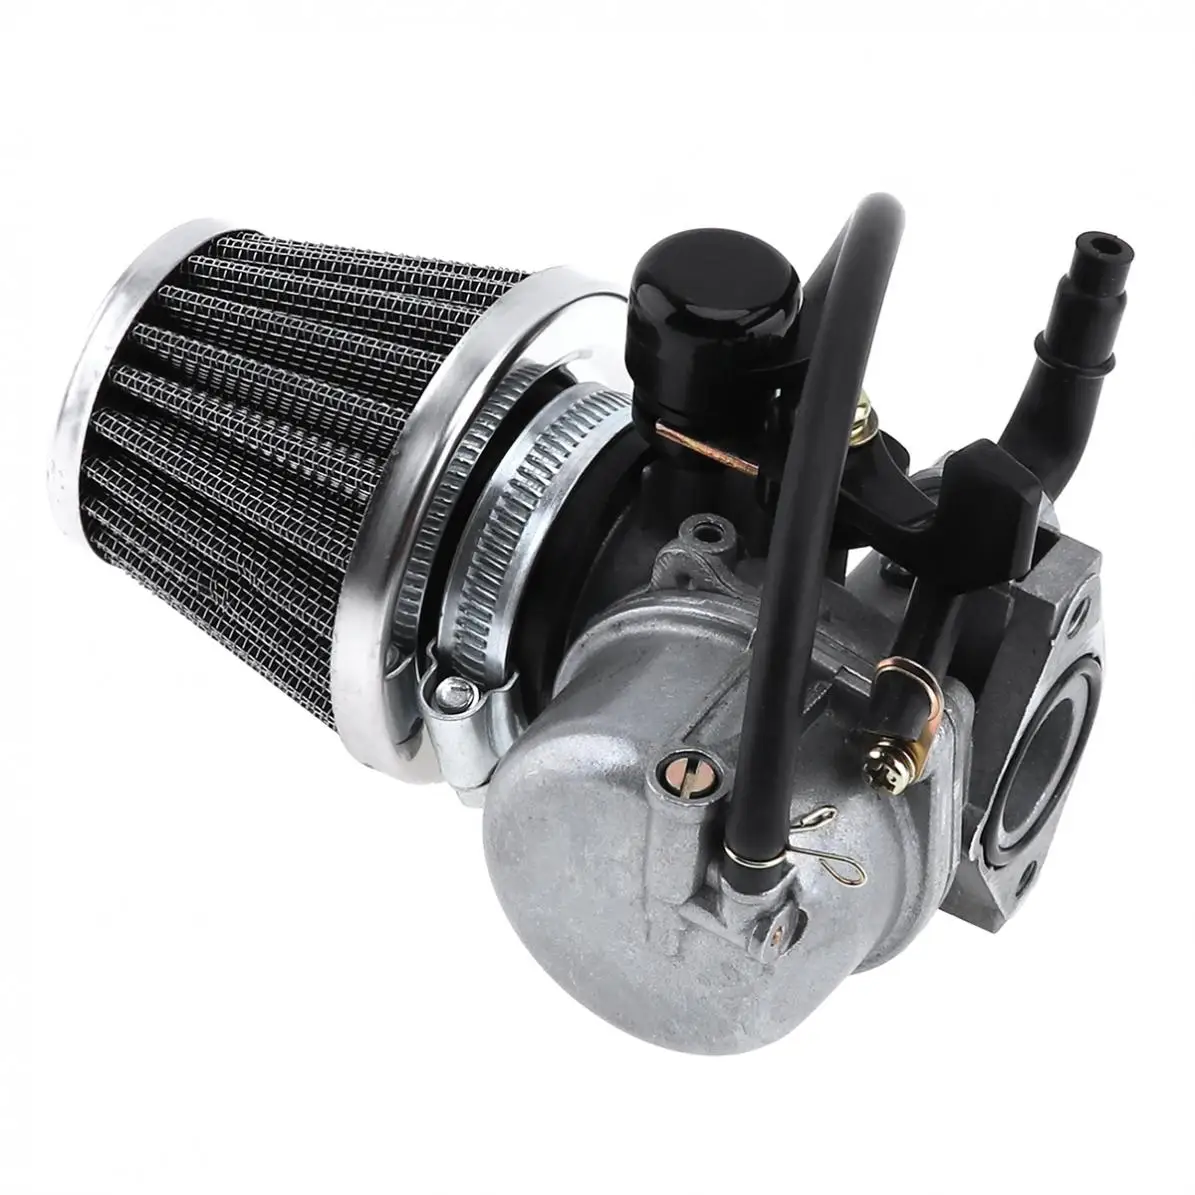 1Pc 35mm Universal Carburetor with Air Filter Motorcycle Accessories for Motorcycle 50CC 70CC 90CC 110CC 125CC ATV Dirt Bike